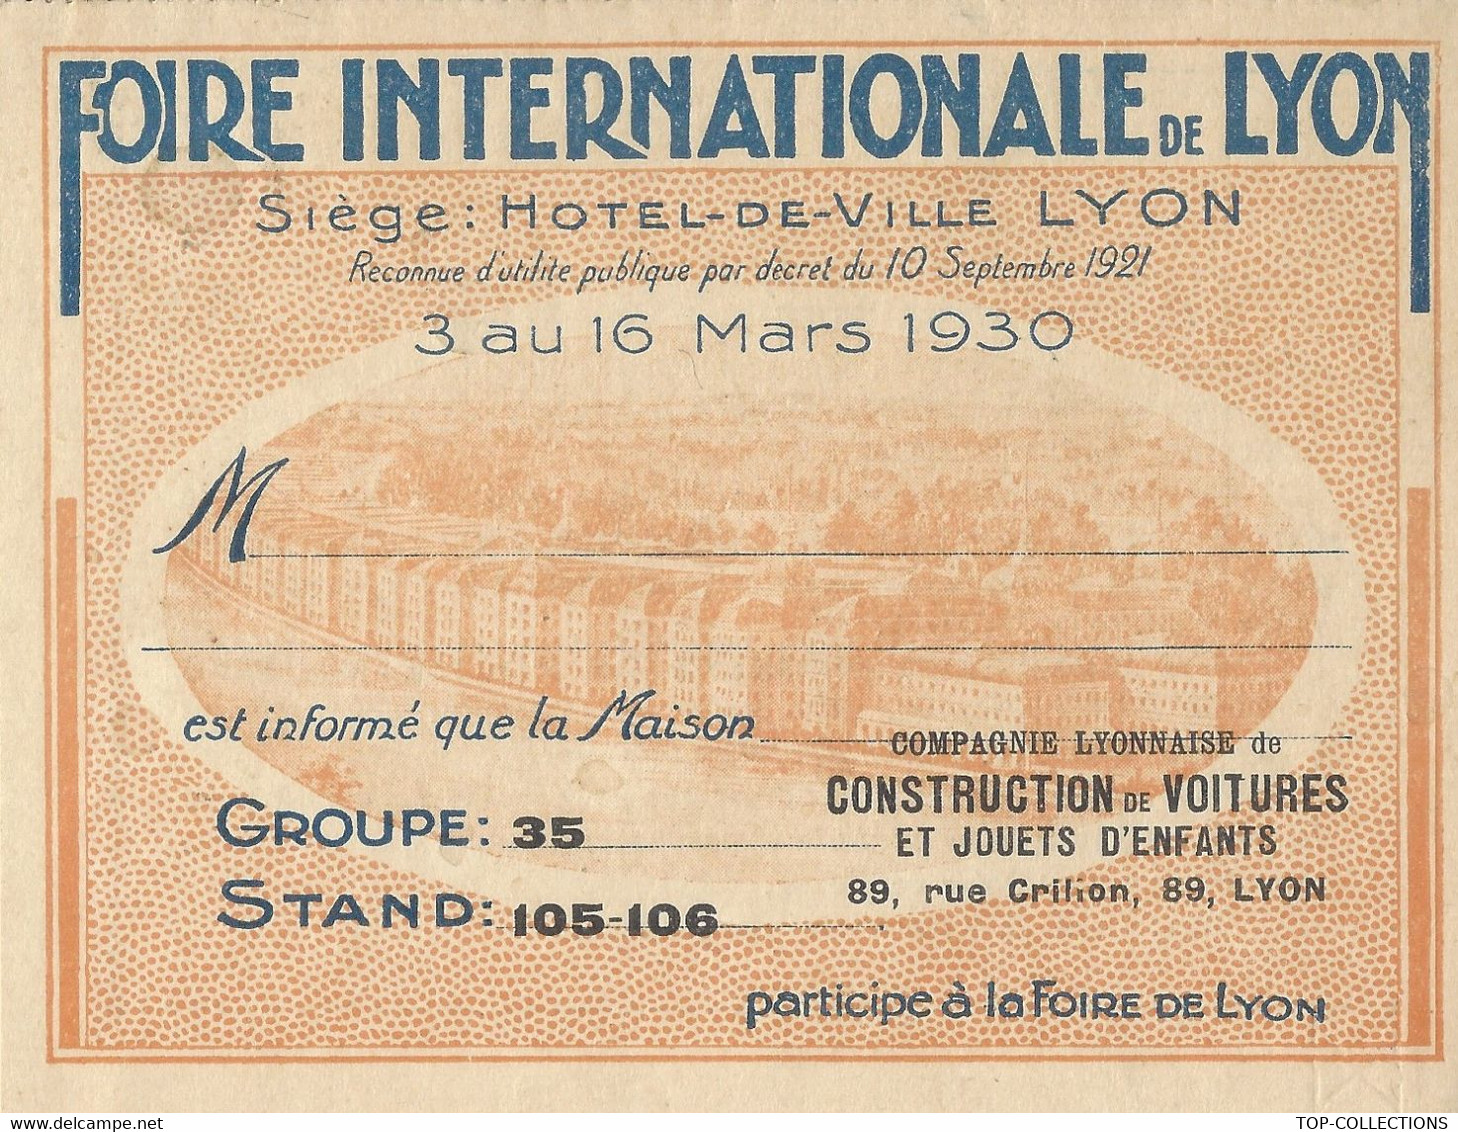 1930 CARTE PARTICIPANT FOIRE INTERNATIONALE  DE  LYON  CIE LYONNAISE DE CONSTRUCTION VOITURES JOUETS ENFANTS B.E.V.SCANS - 1900 – 1949